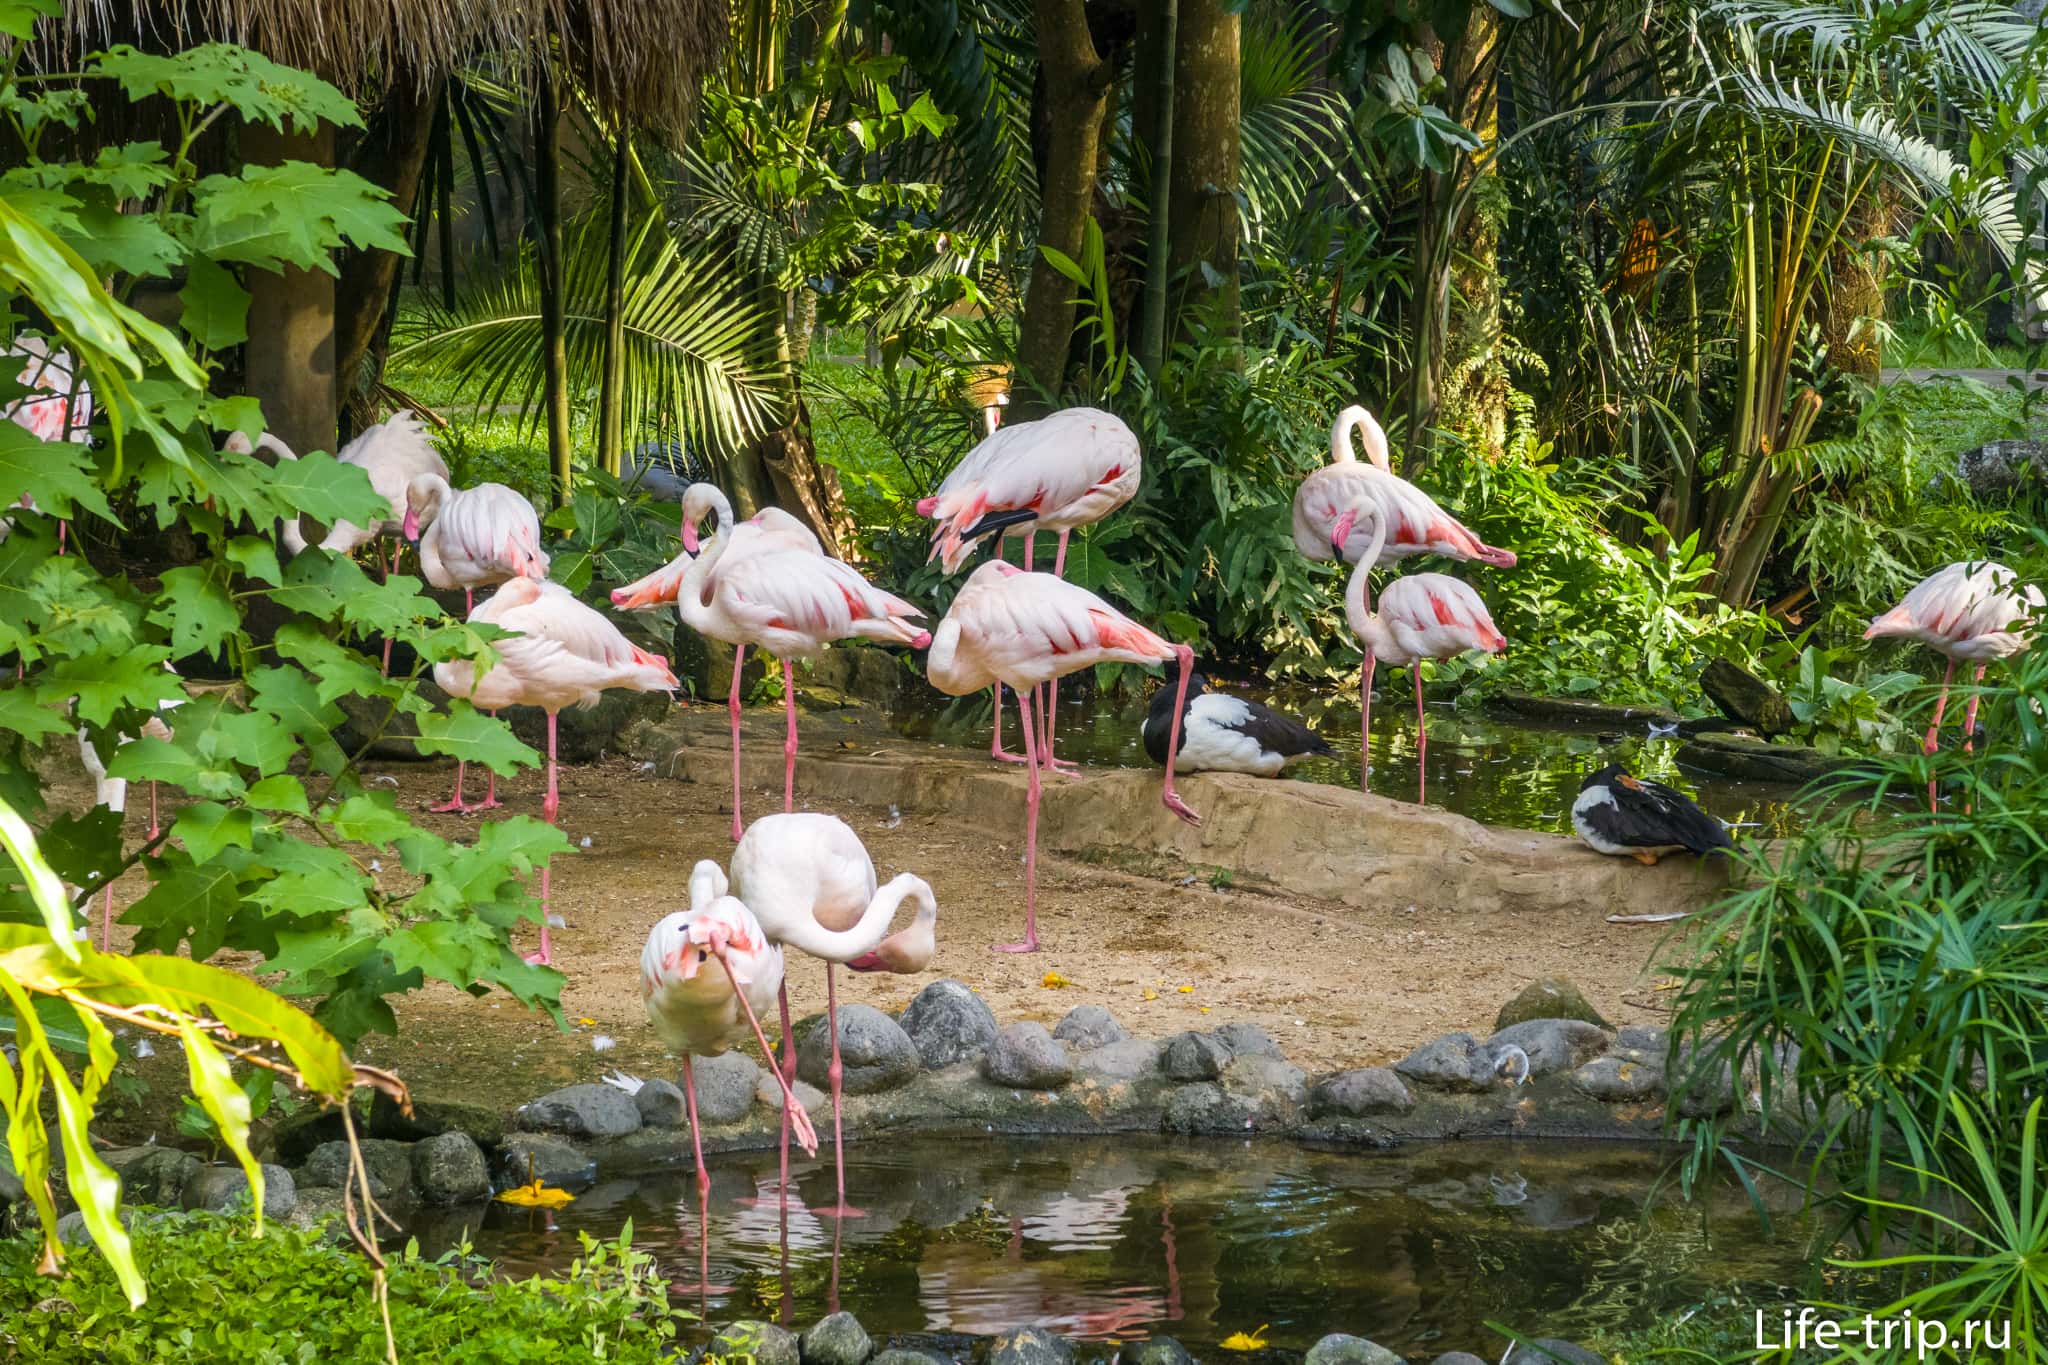 Парк птиц на бали (bali bird park) — место обитания более 250 видов птиц из разных стран